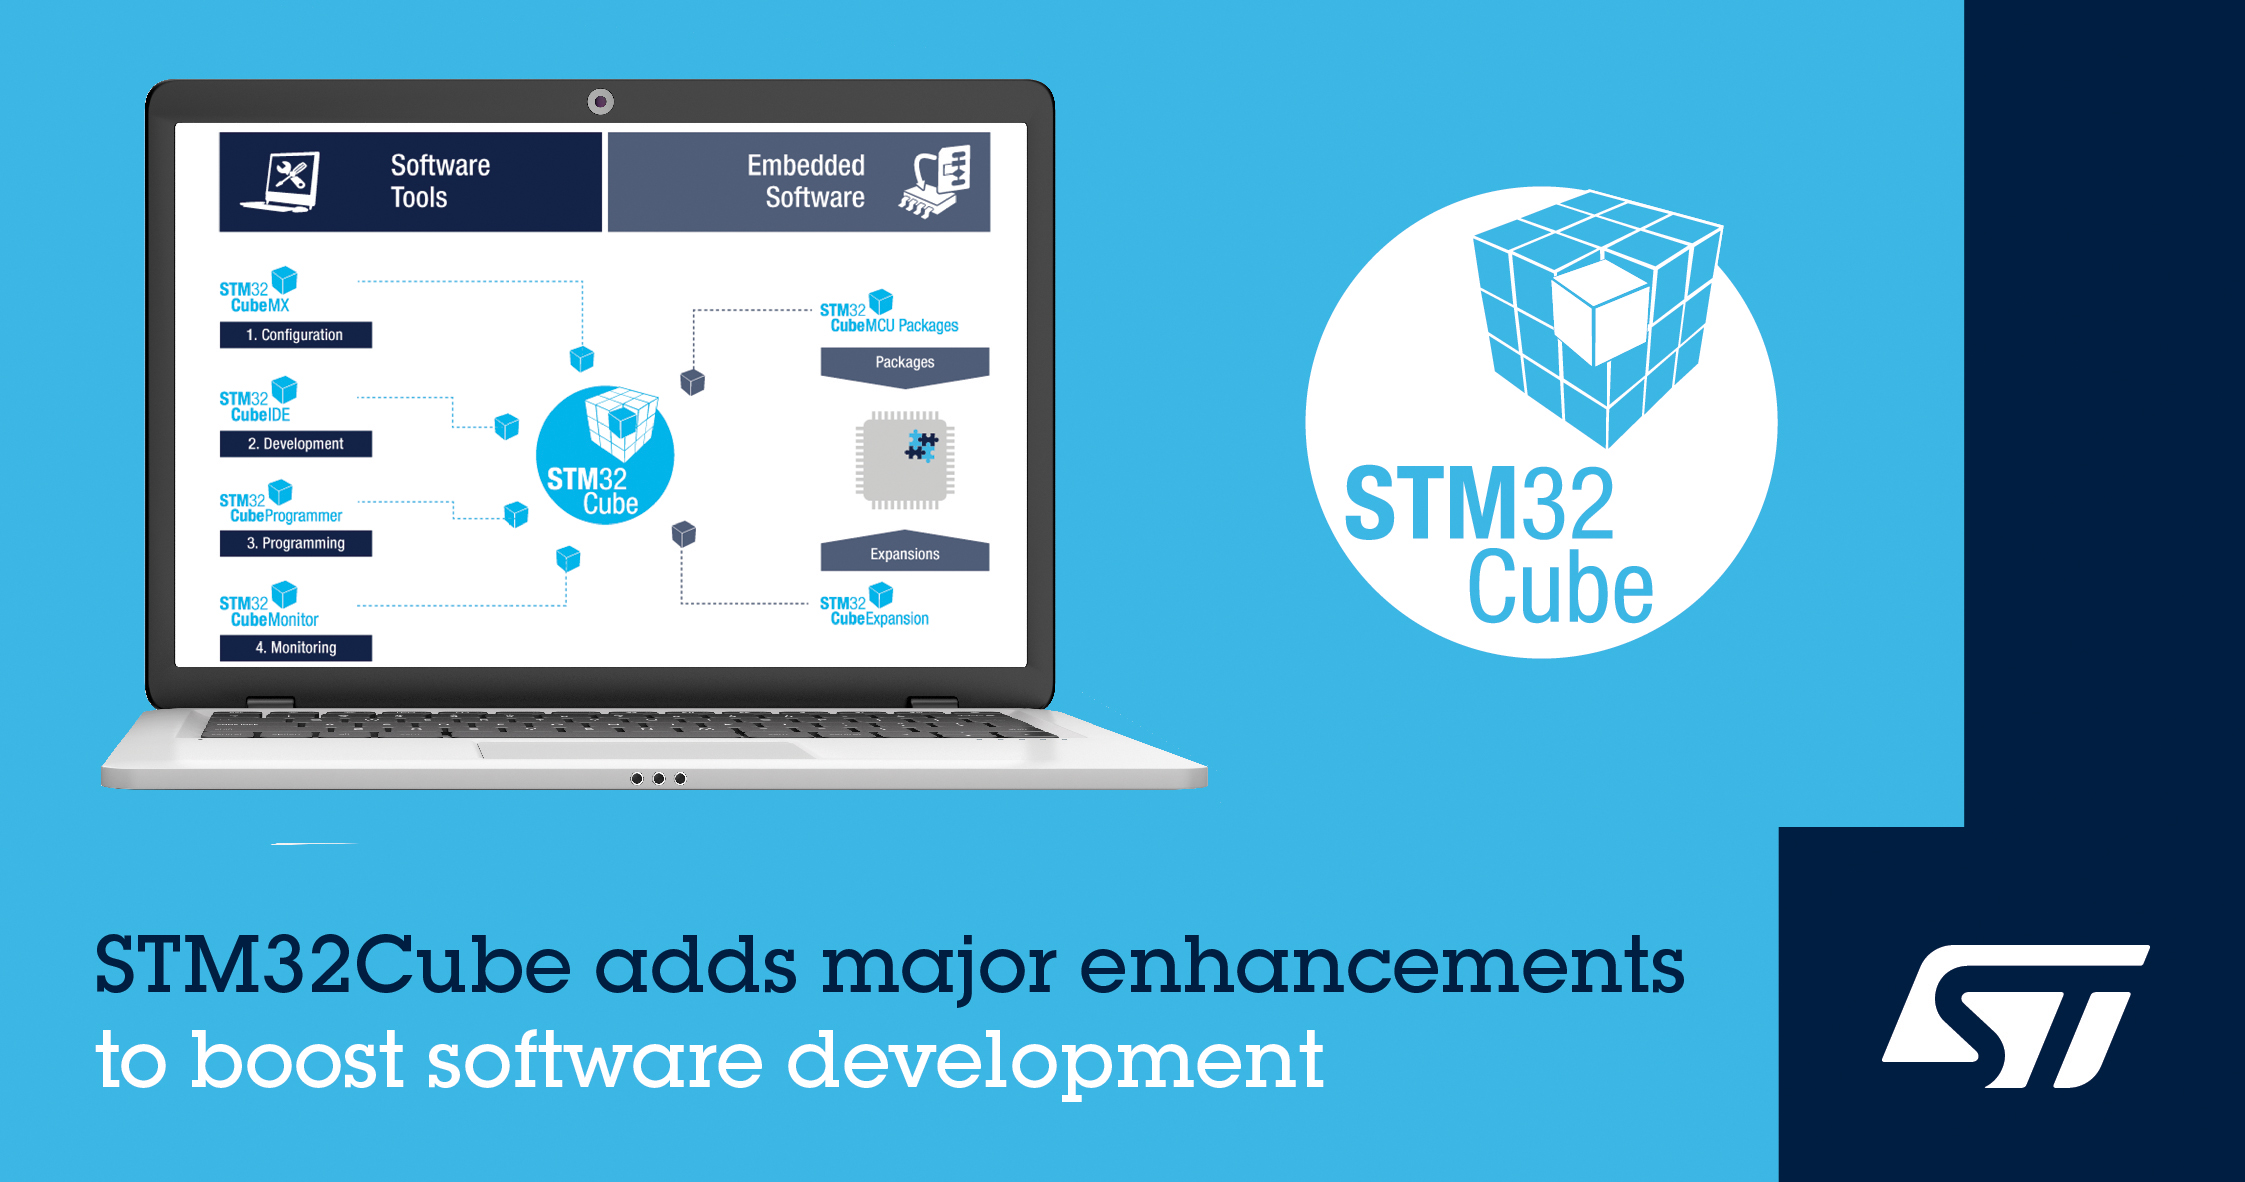 意法半导体为STM32Cube®生态系统增添新功能，提高软件开发效率